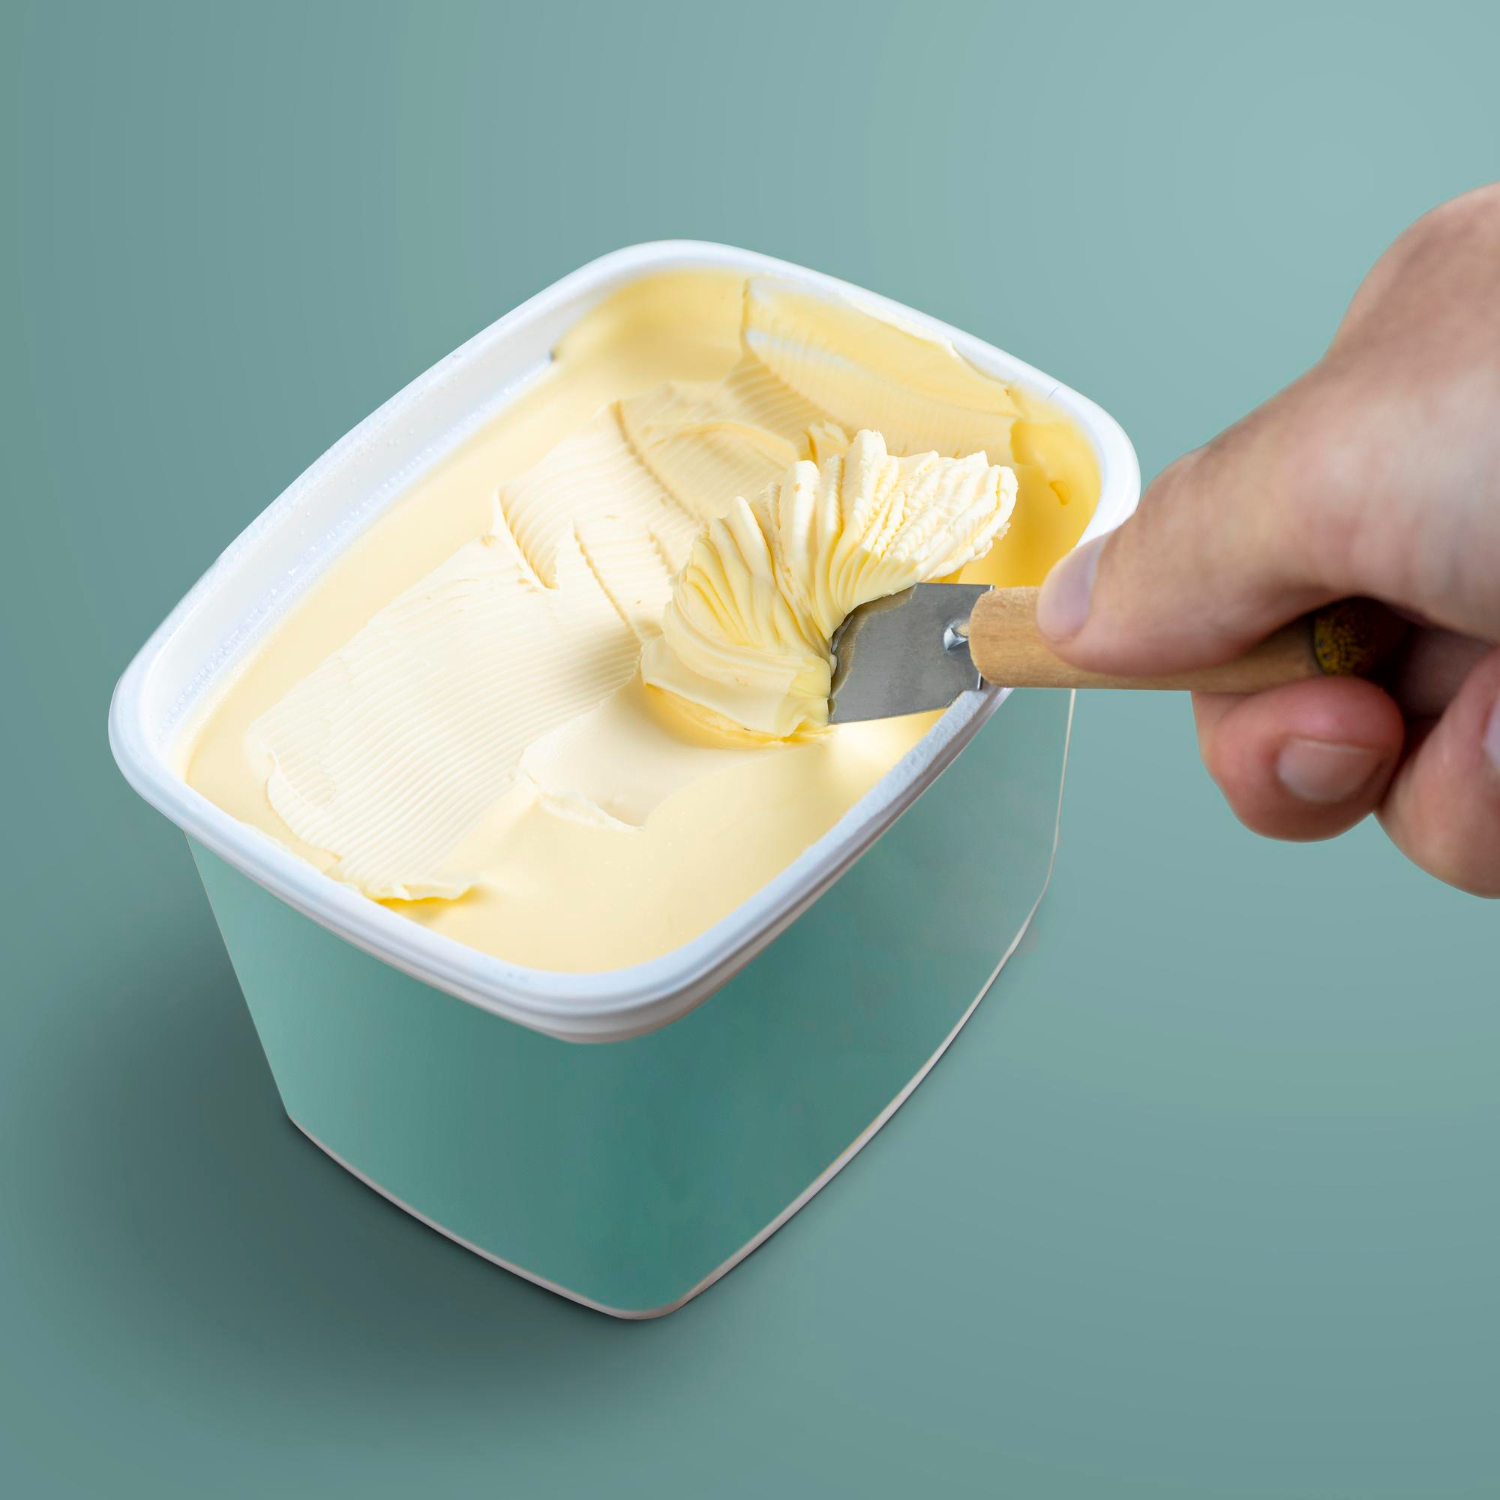 Finalmente, uma dica para amolecer a manteiga rapidamente